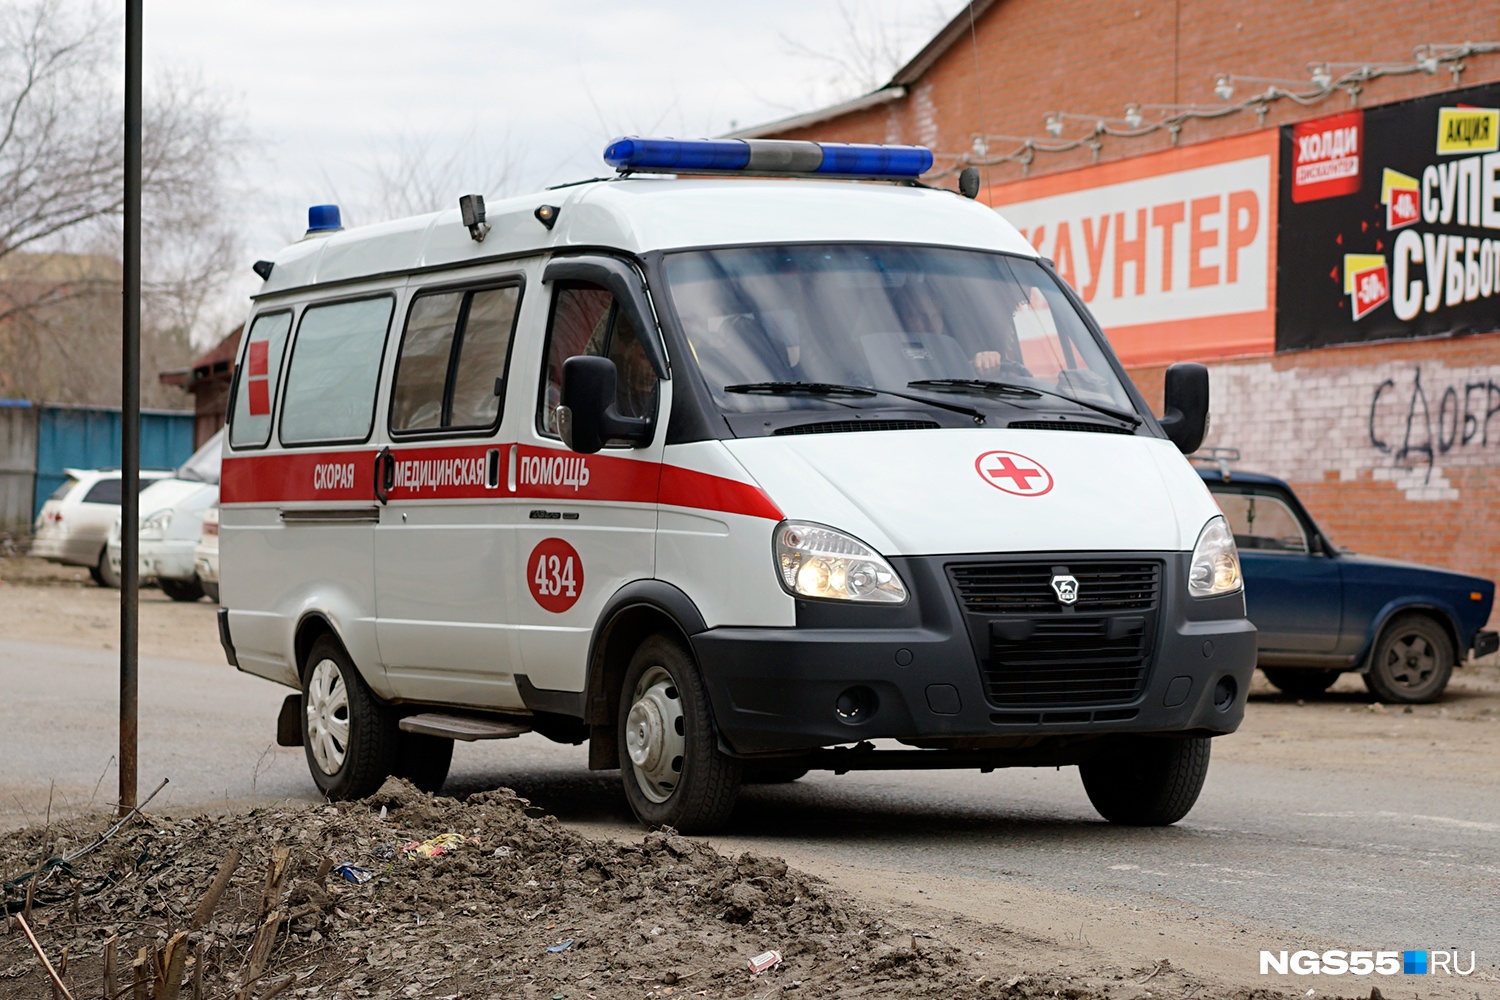 17-летнюю девушку насмерть сбили на трассе в Омской области